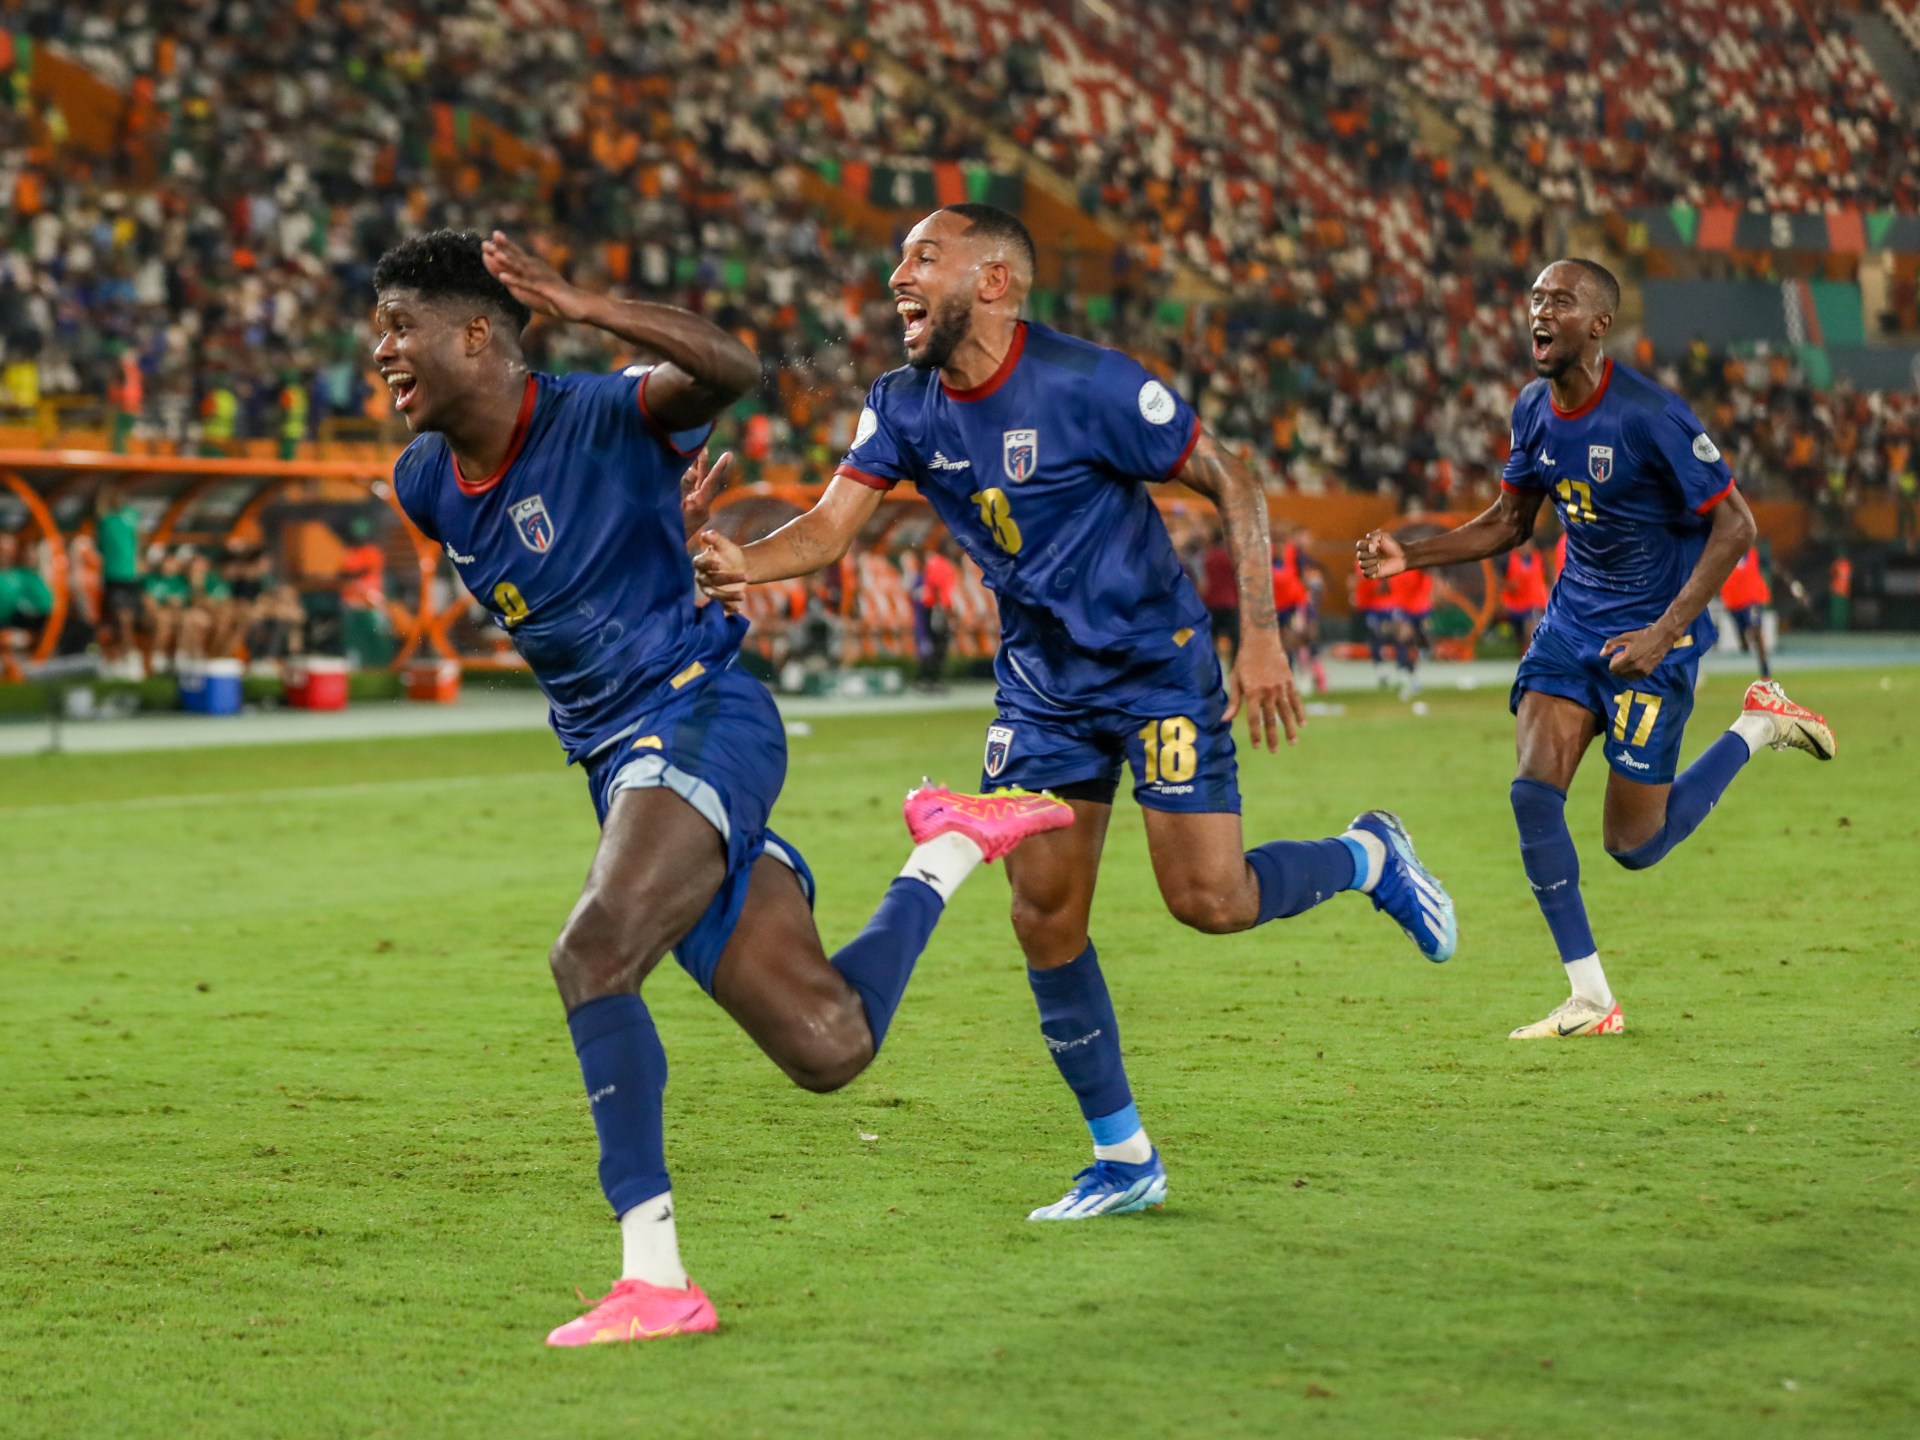 انقلاب في الكرة الأفريقية.. قصة صعود المنتخبات المغمورة في كأس الأمم | رياضة – البوكس نيوز